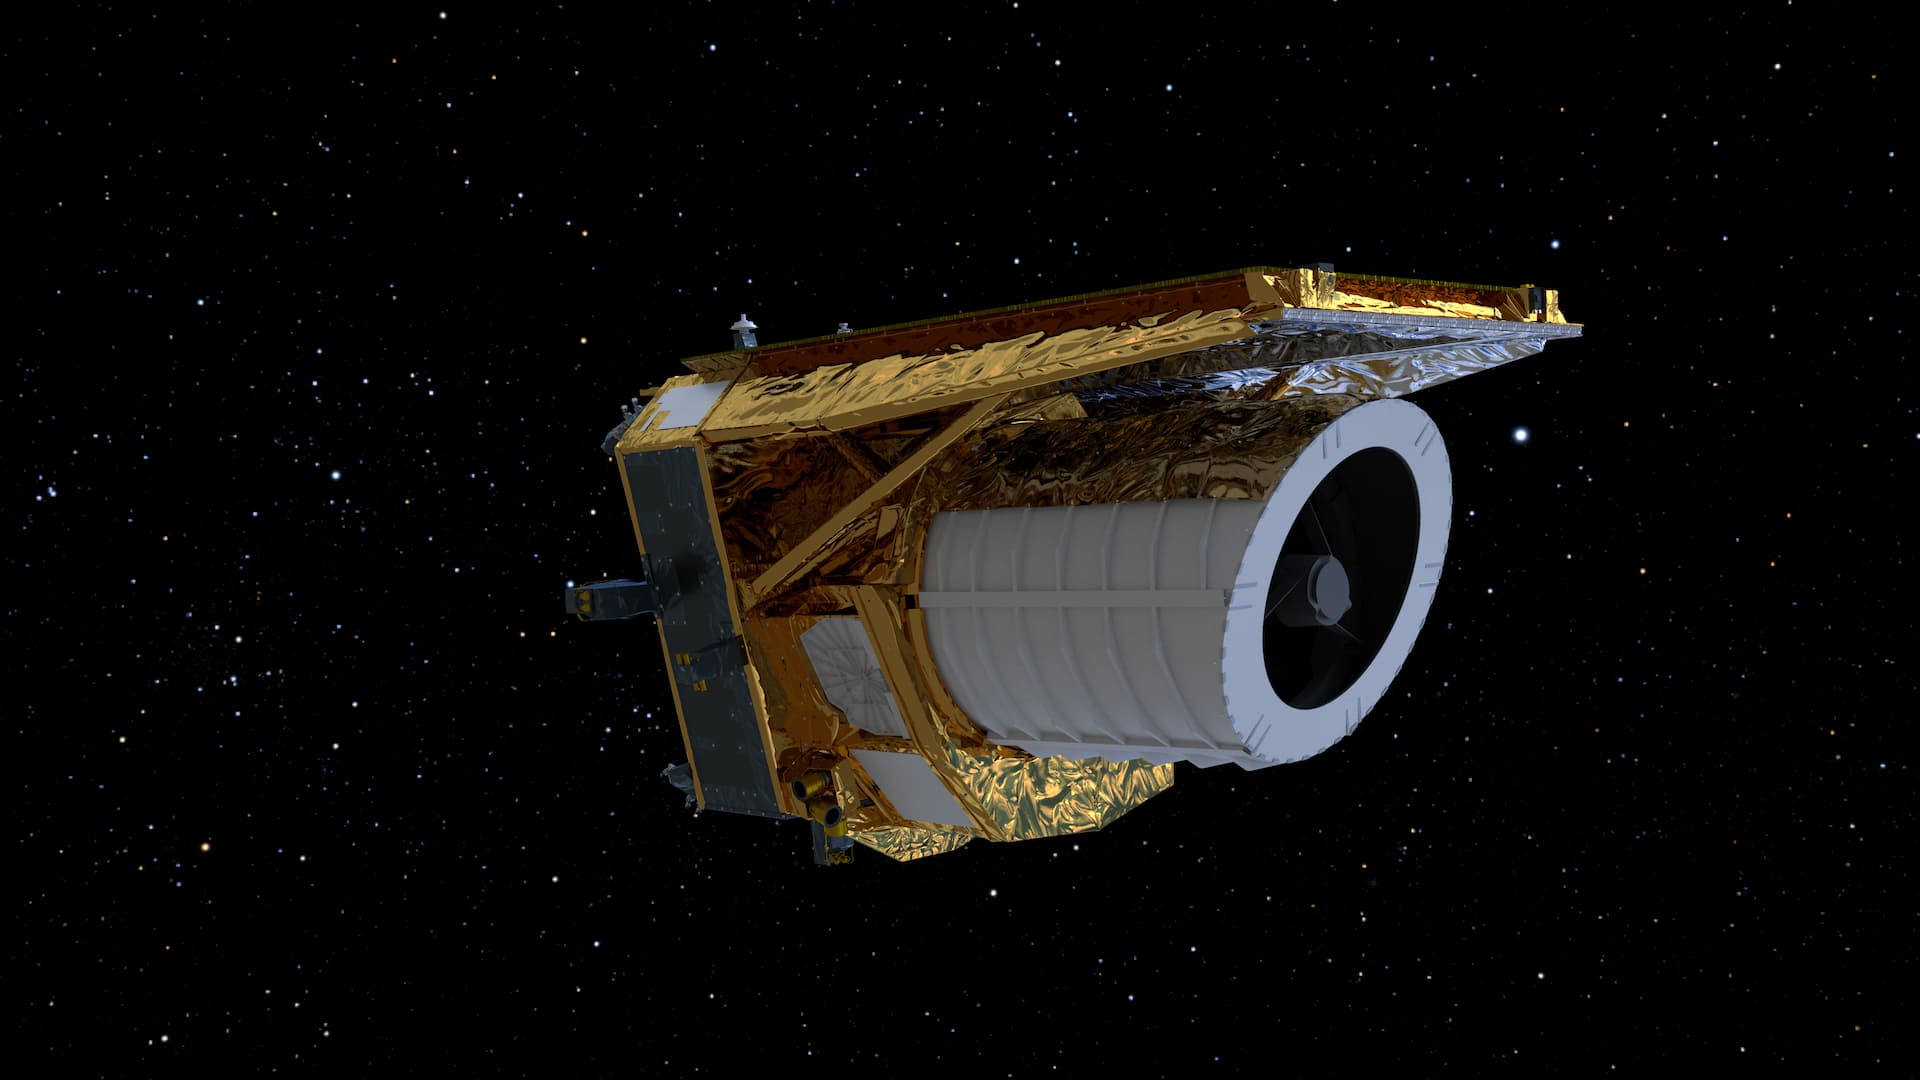 ASI - Prime spettacolari e dettagliate immagini dell’Universo inviate dal telescopio spaziale europeo Euclid